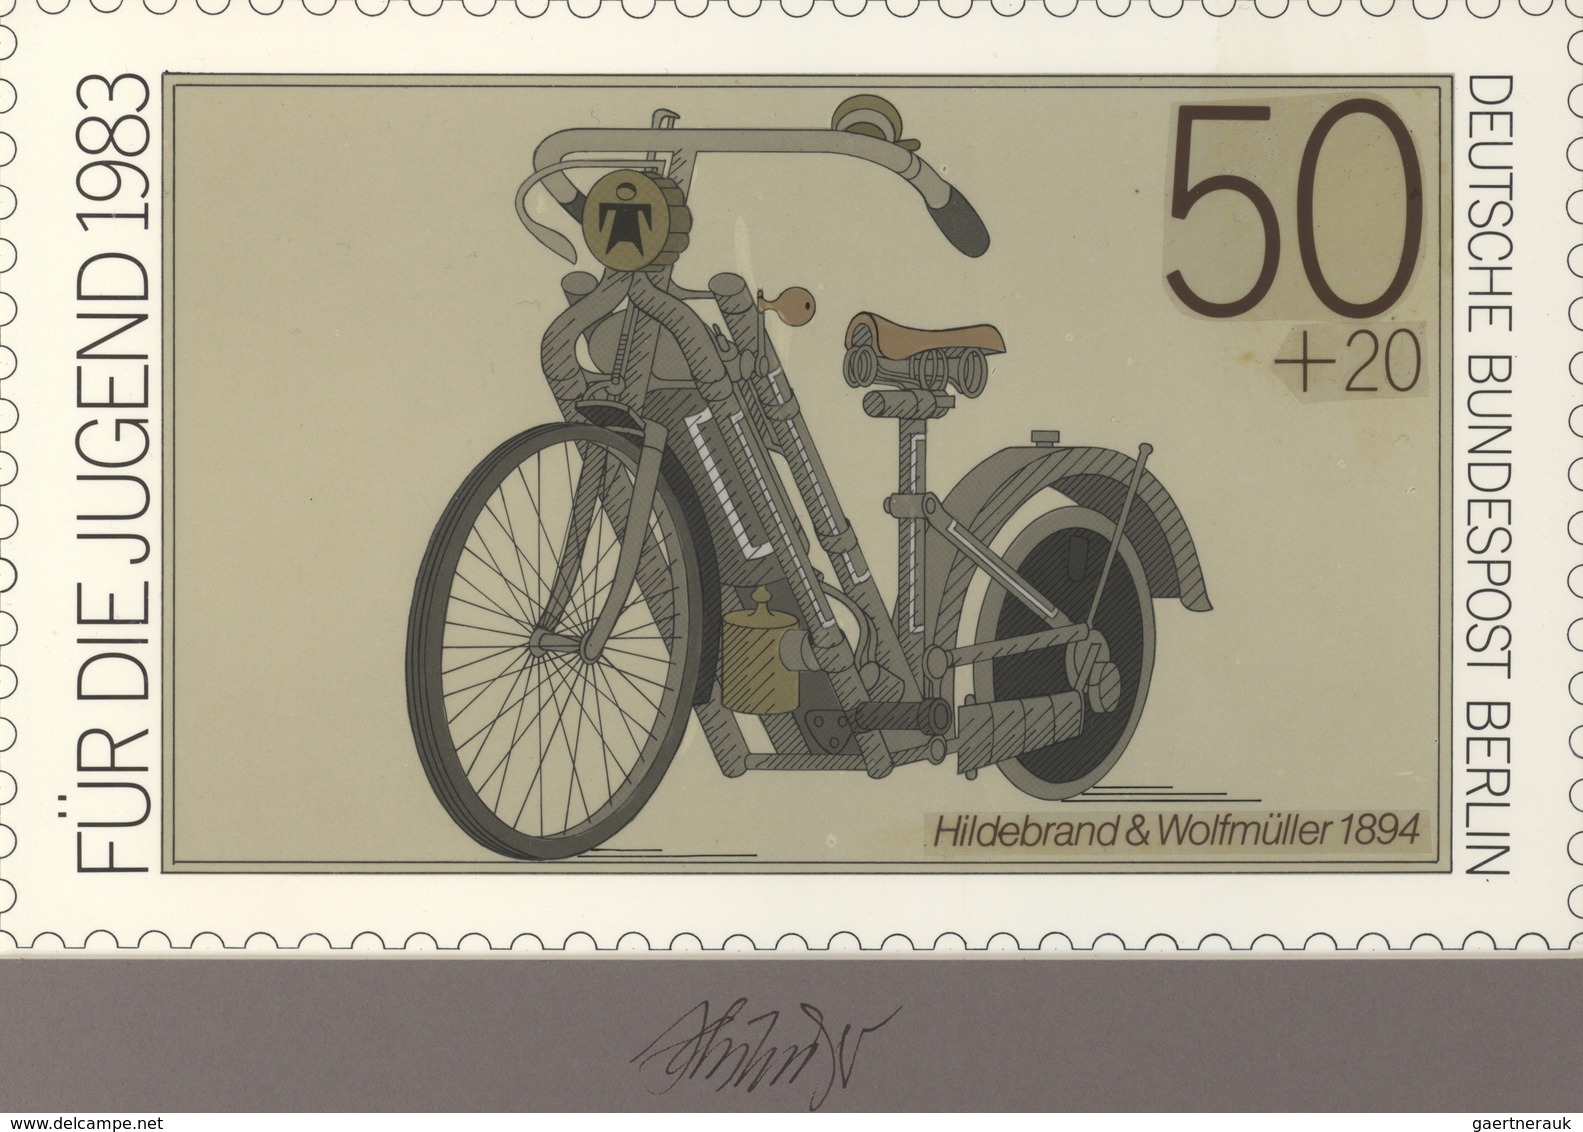 Thematik: Verkehr-Motorrad  / Traffic-motorcycle: 1983, Berlin, Nicht Angenommener Künstlerentwurf ( - Motorfietsen